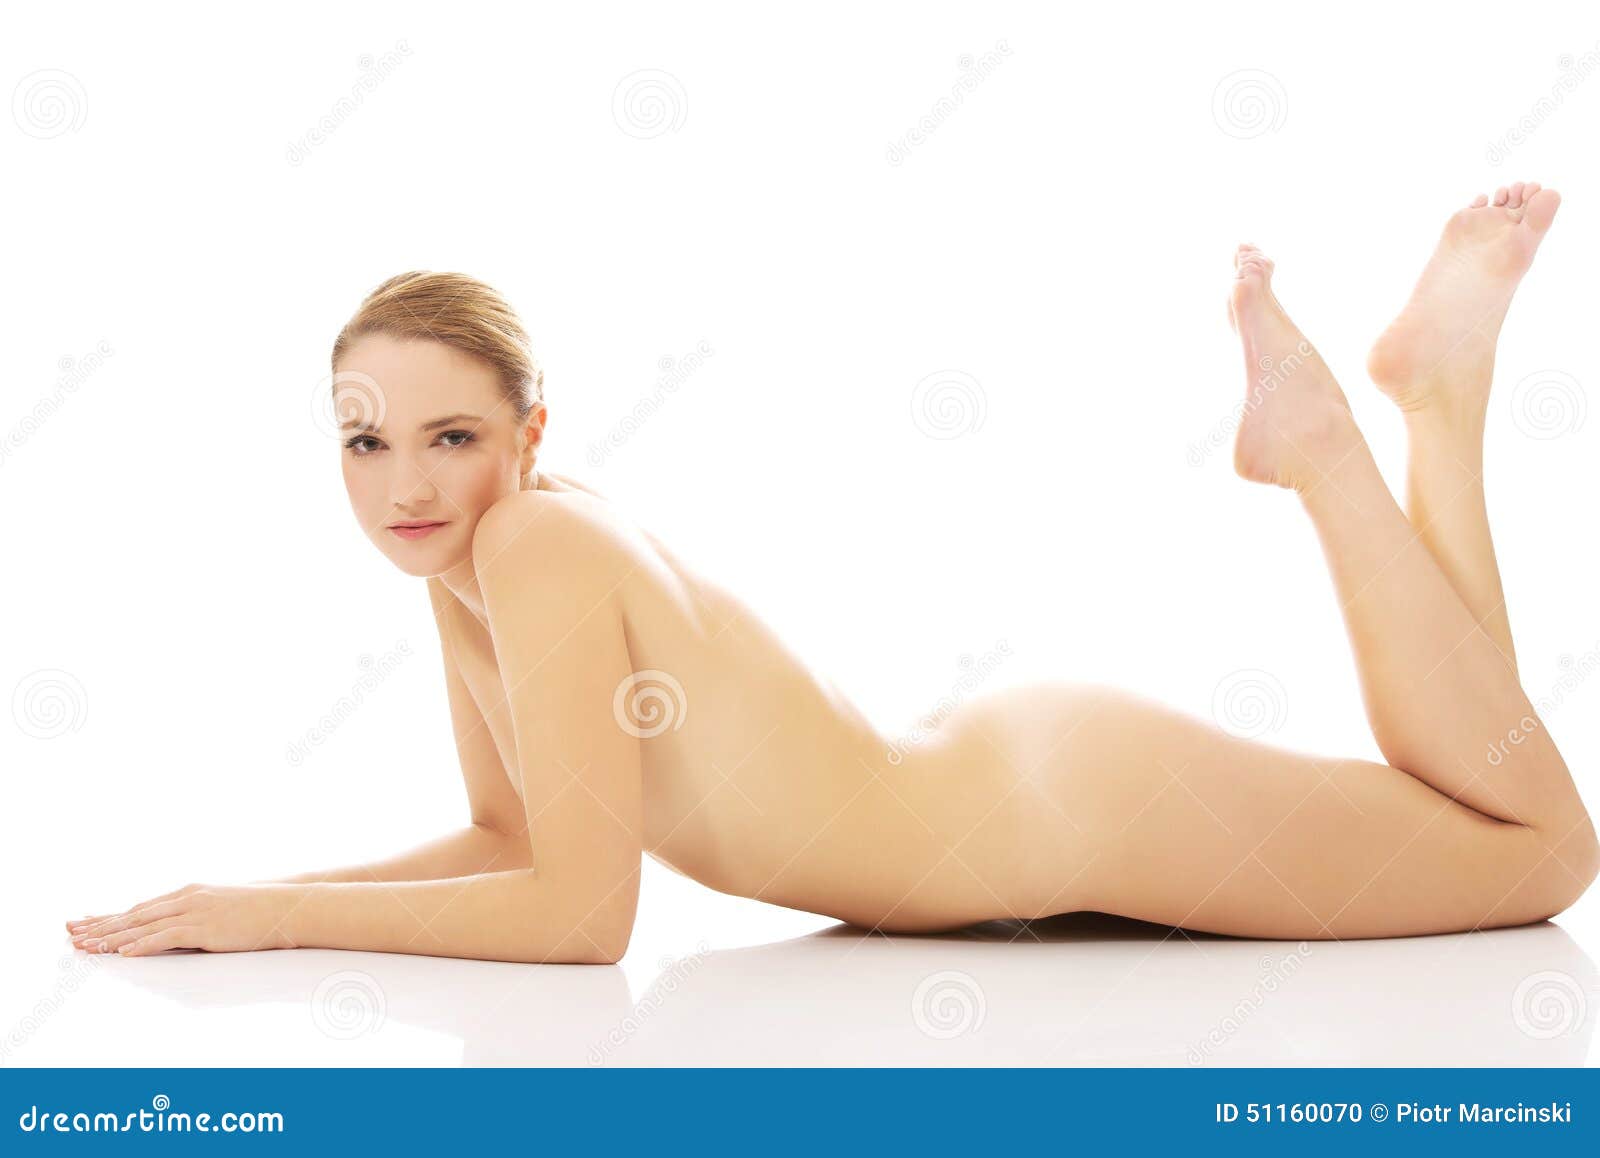 hot nude women laying down